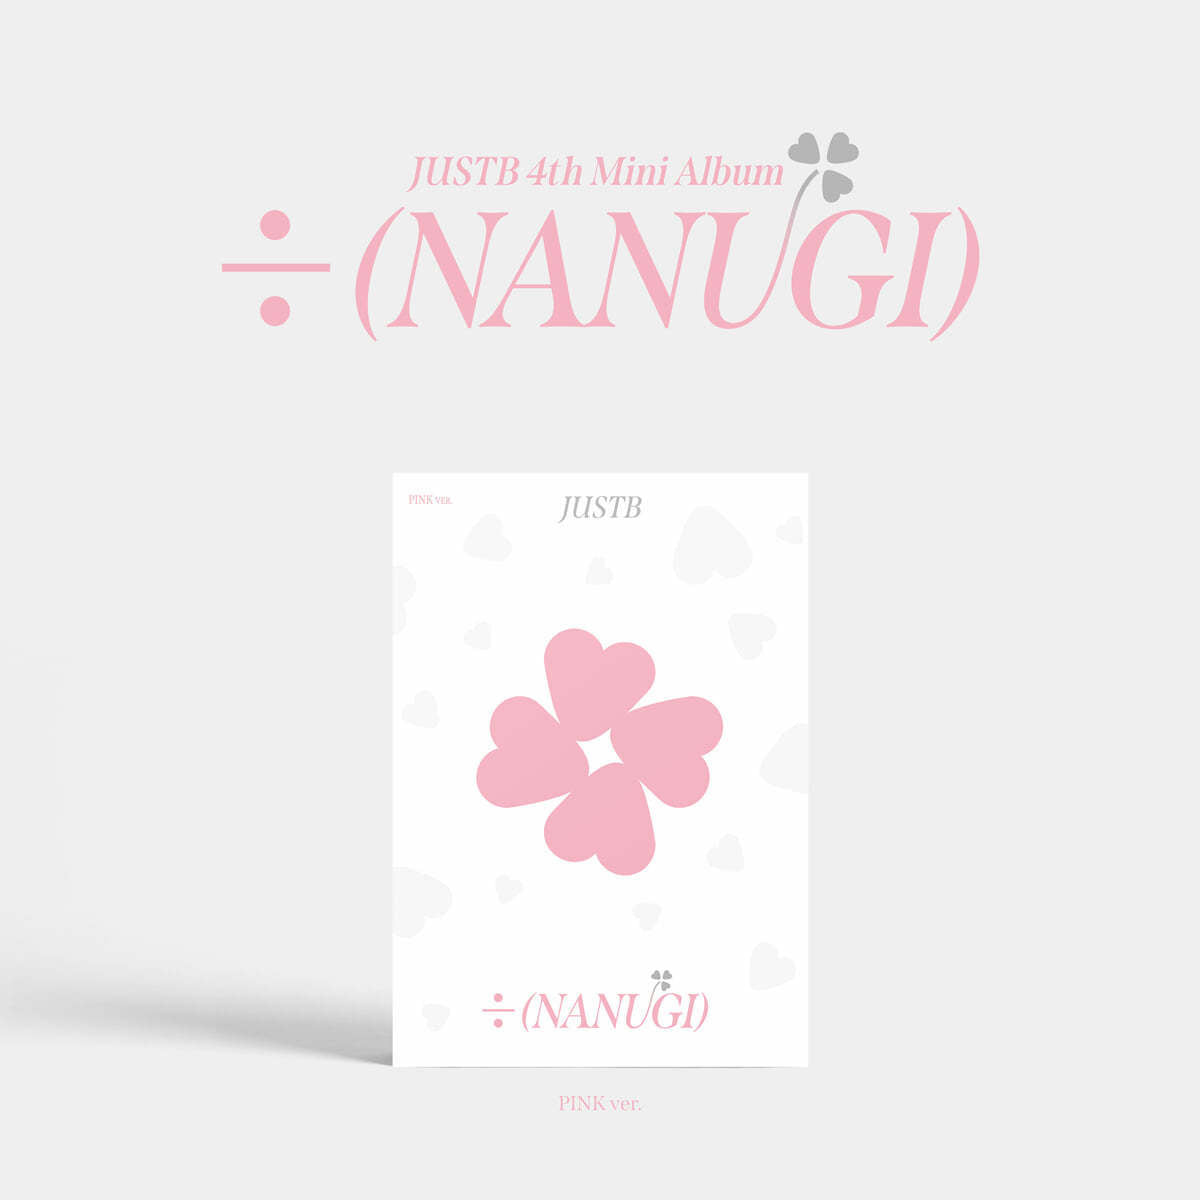 JUST B 4th Mini Album : ÷ (NANUGI)